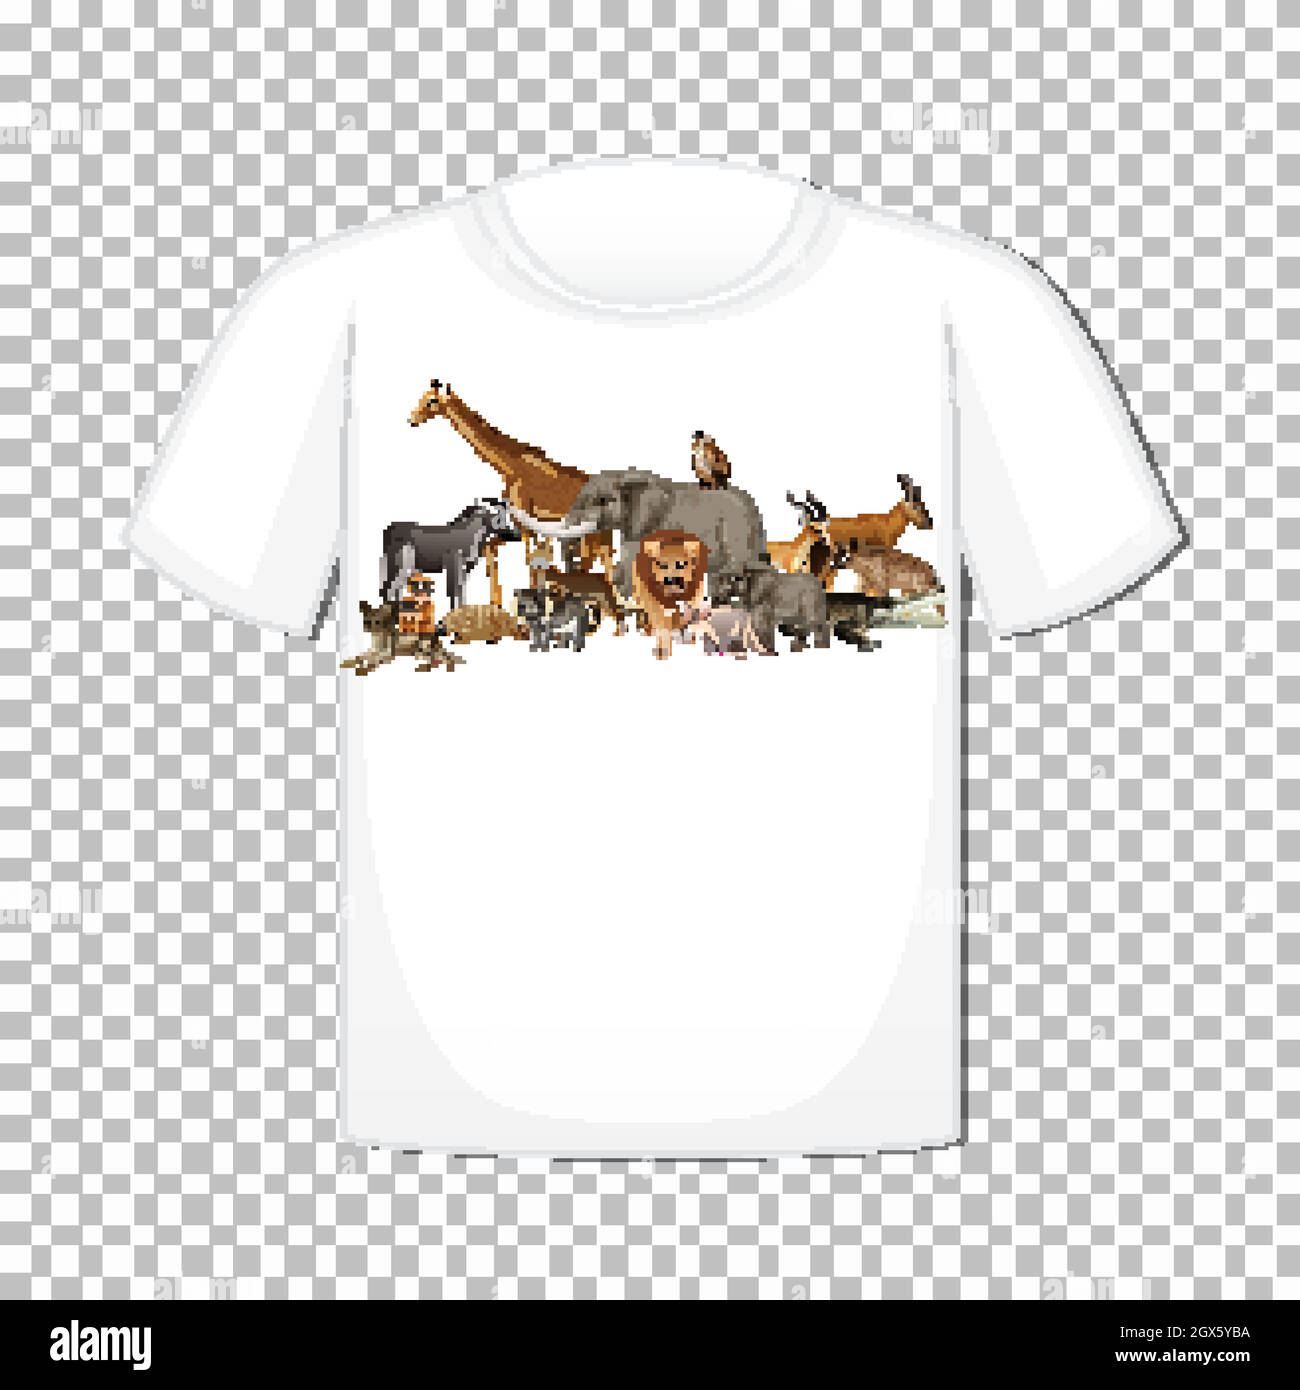 Motif animal sauvage sur un t-shirt isolé sur fond transparent Illustration de Vecteur